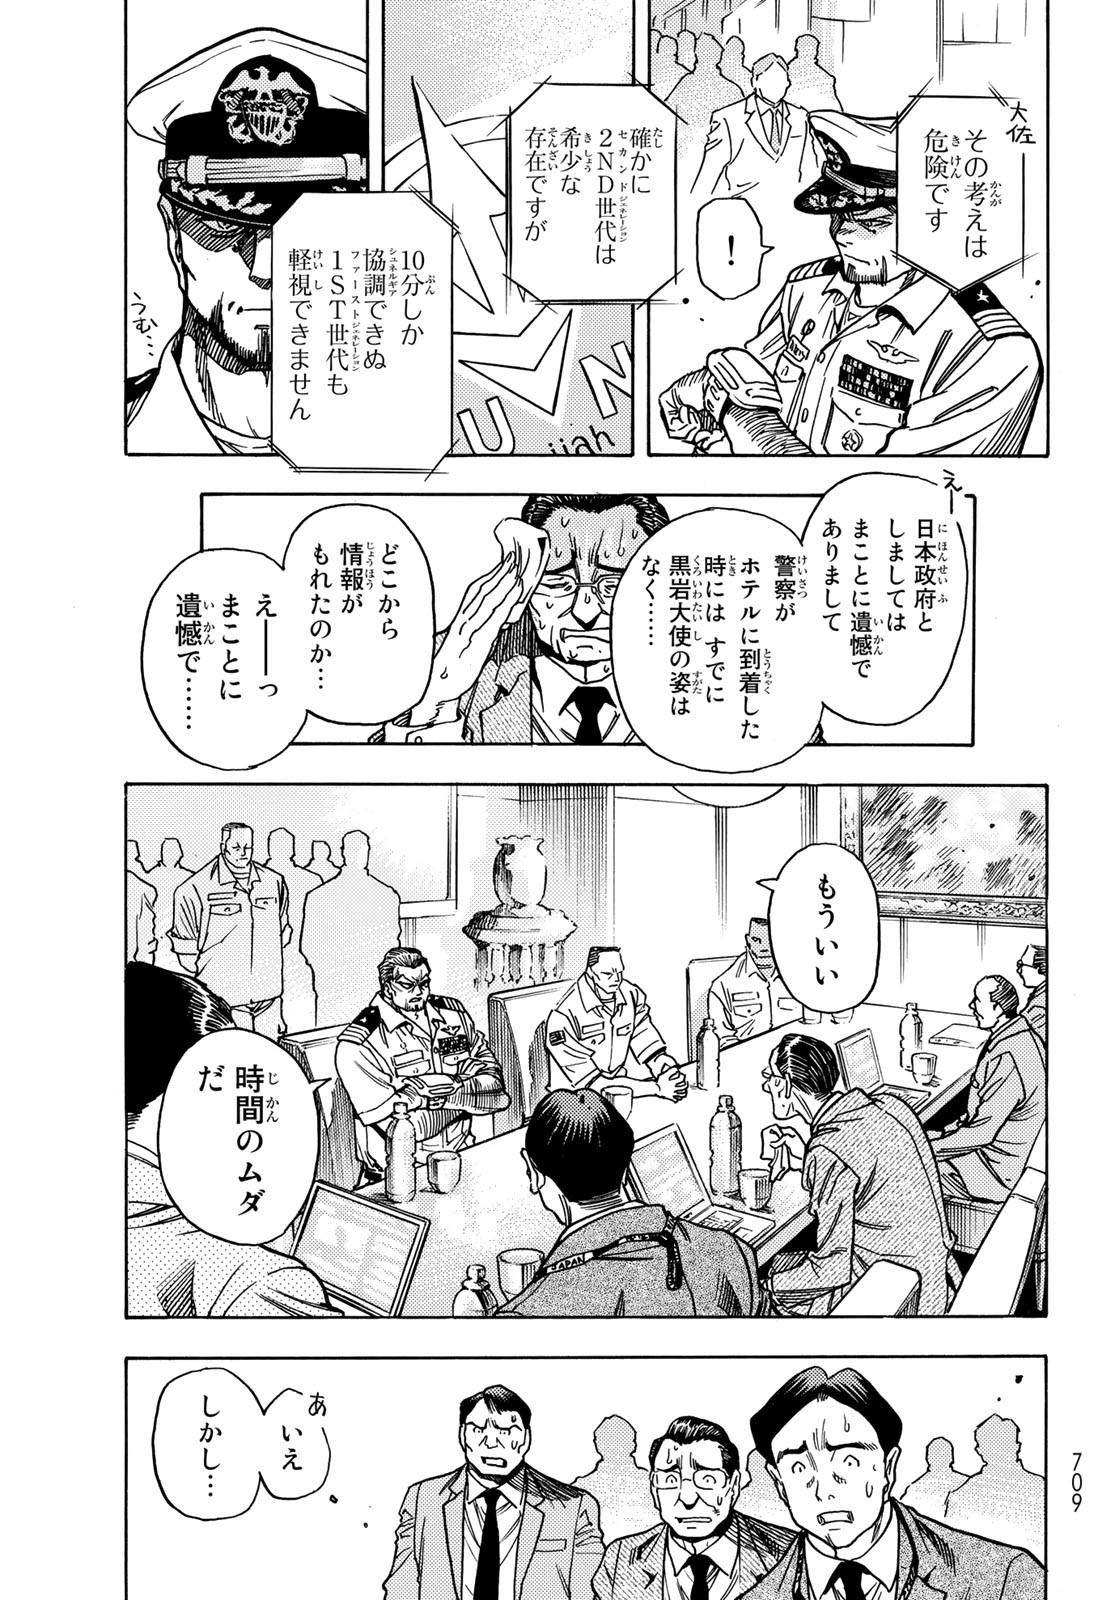 Mugou no Schnell Gear: Chikyuugai Kisouka AI - Chapter 36 - Page 5